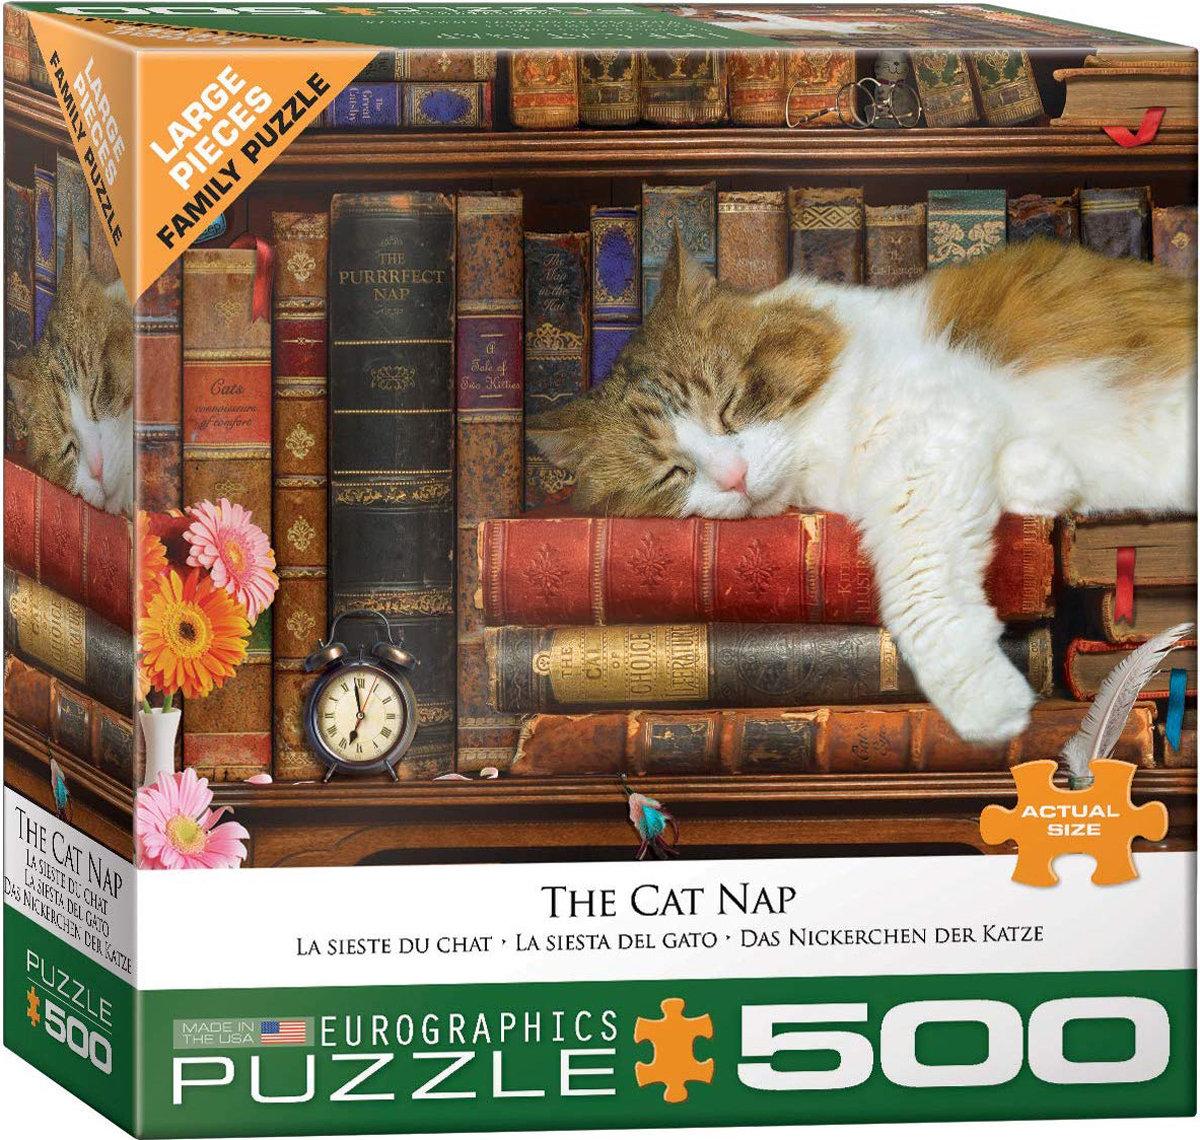 The Cat Nap